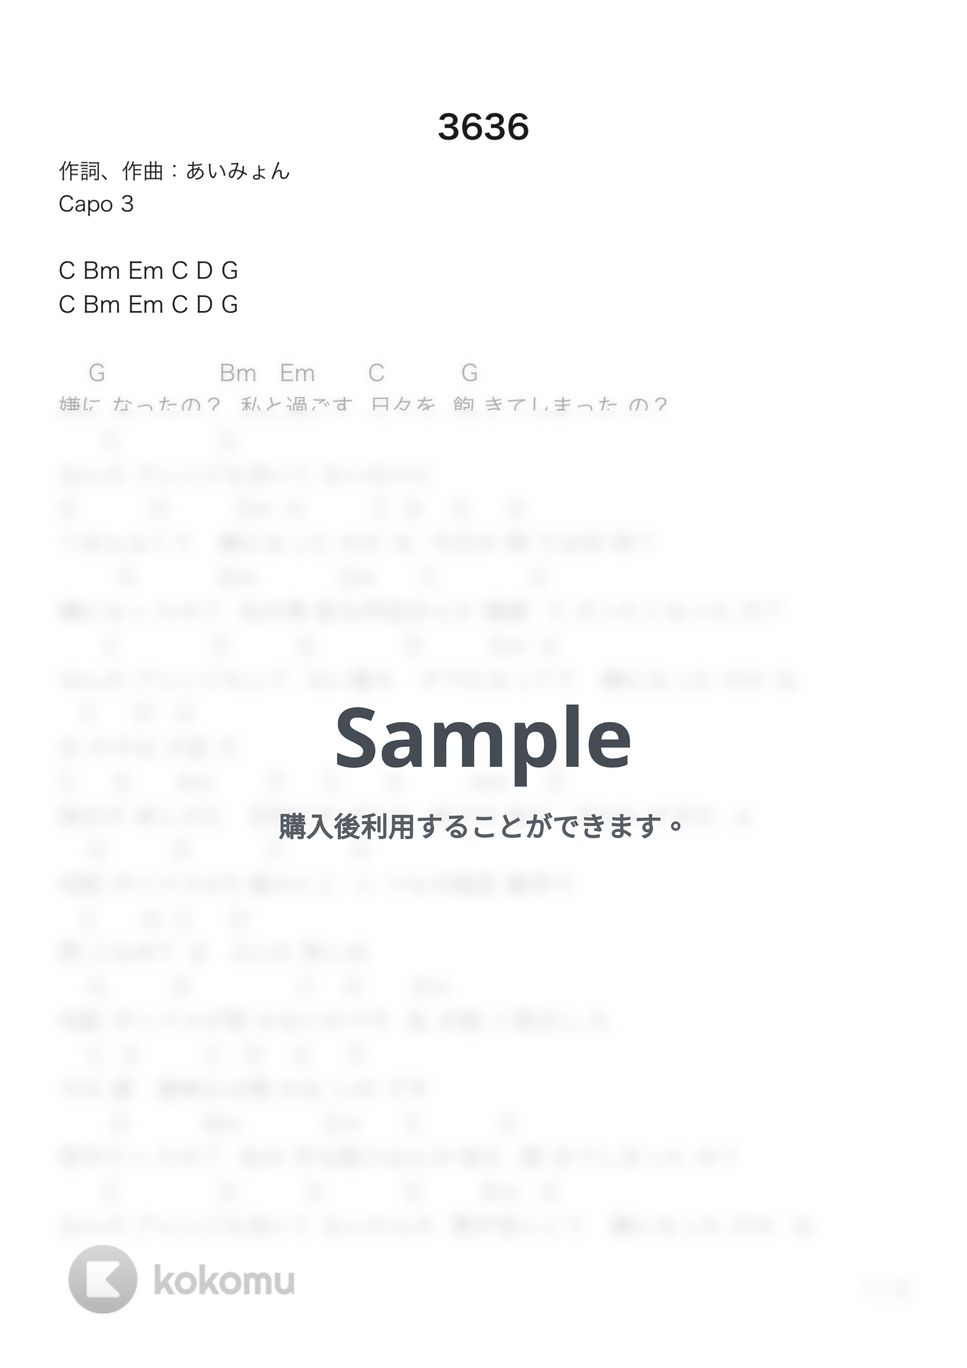 あいみょん - 3636 (ギター弾き語り) by G's score